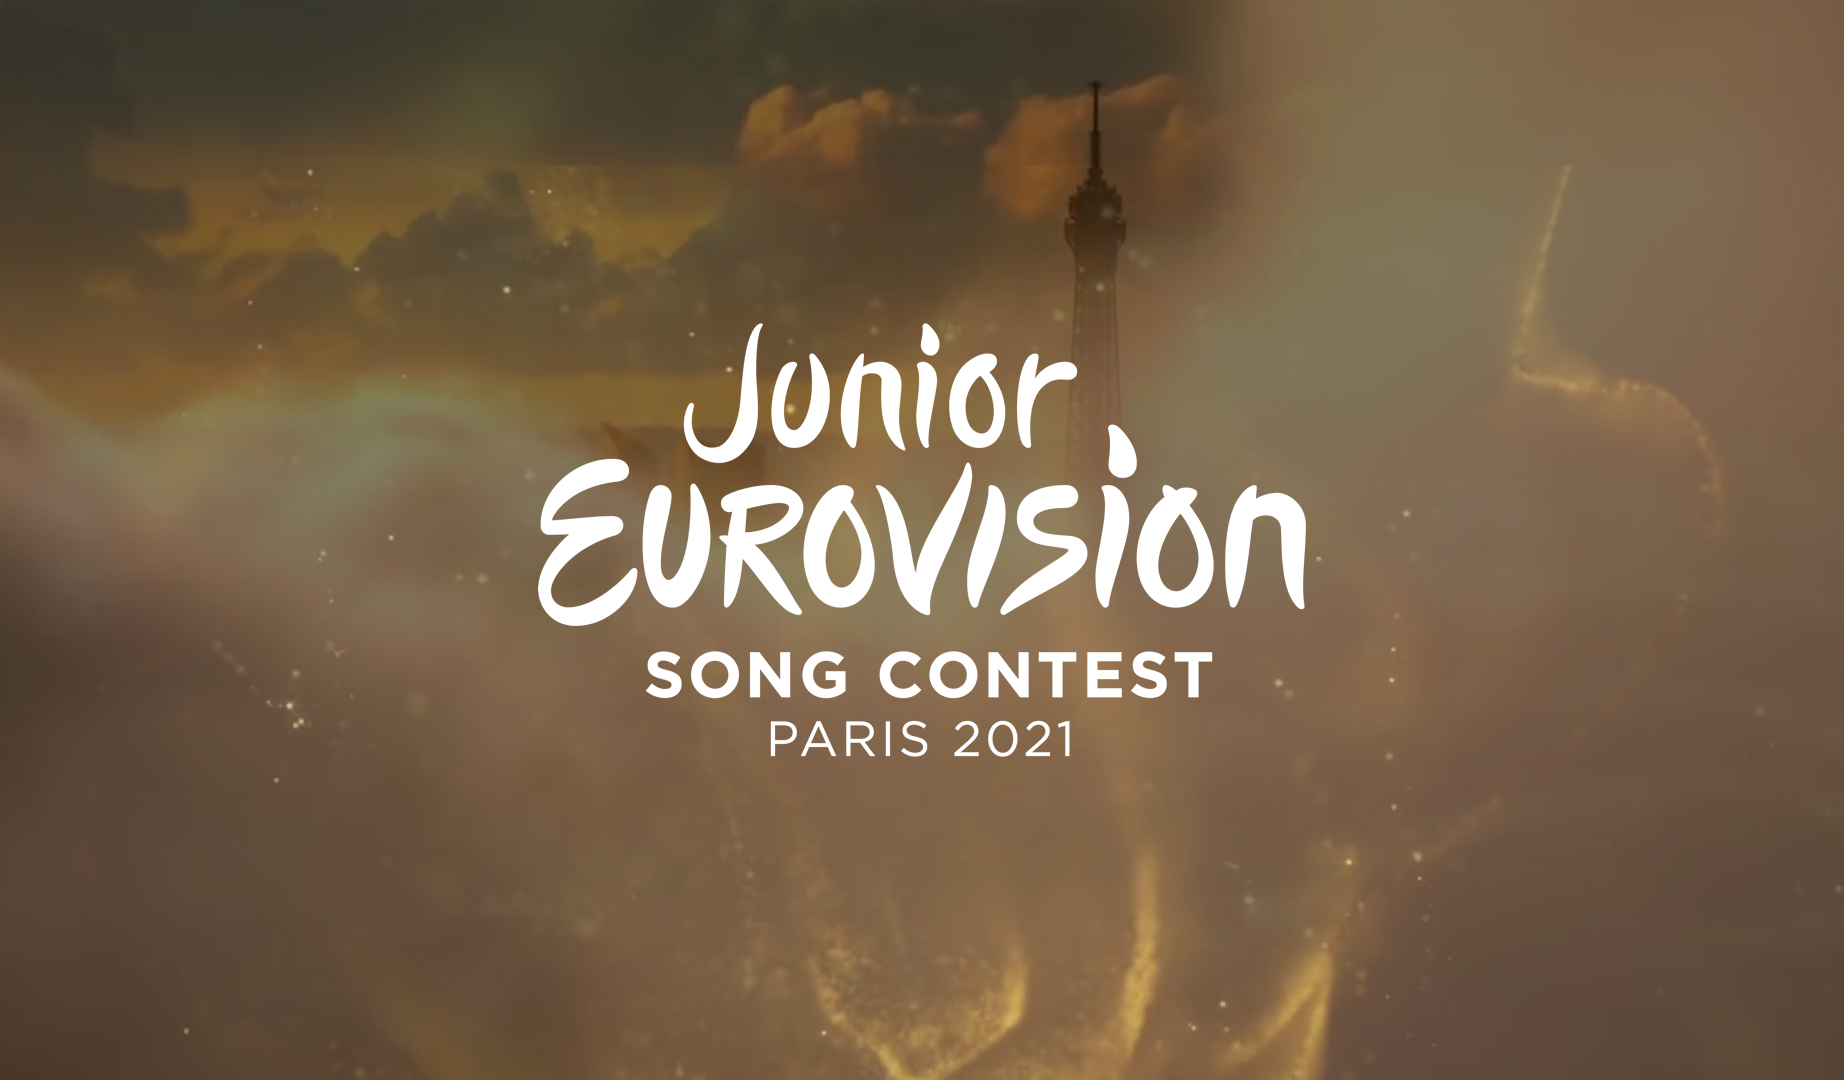 Conoce dónde y cuándo se celebrará Eurovisión Junior 2021